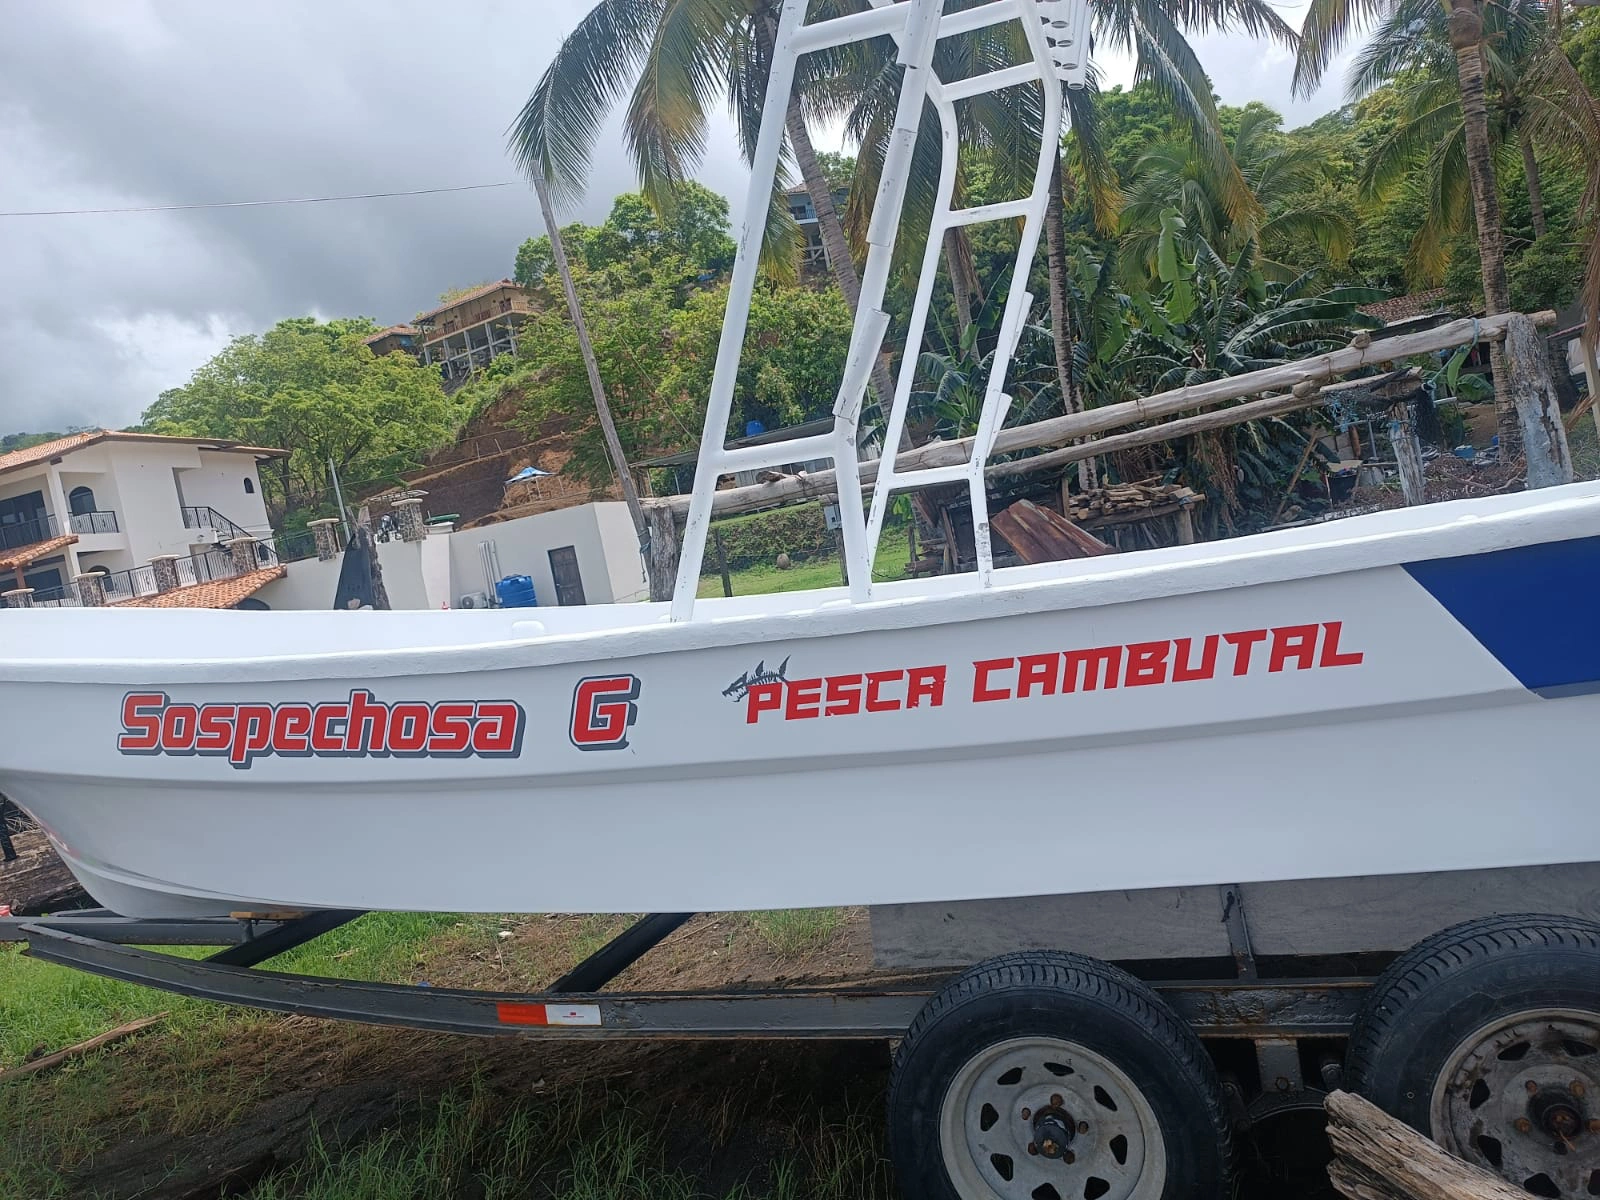 Embarcaciones Pesca Cambutal: Diseñadas para la Excelencia en Pesca Deportiva